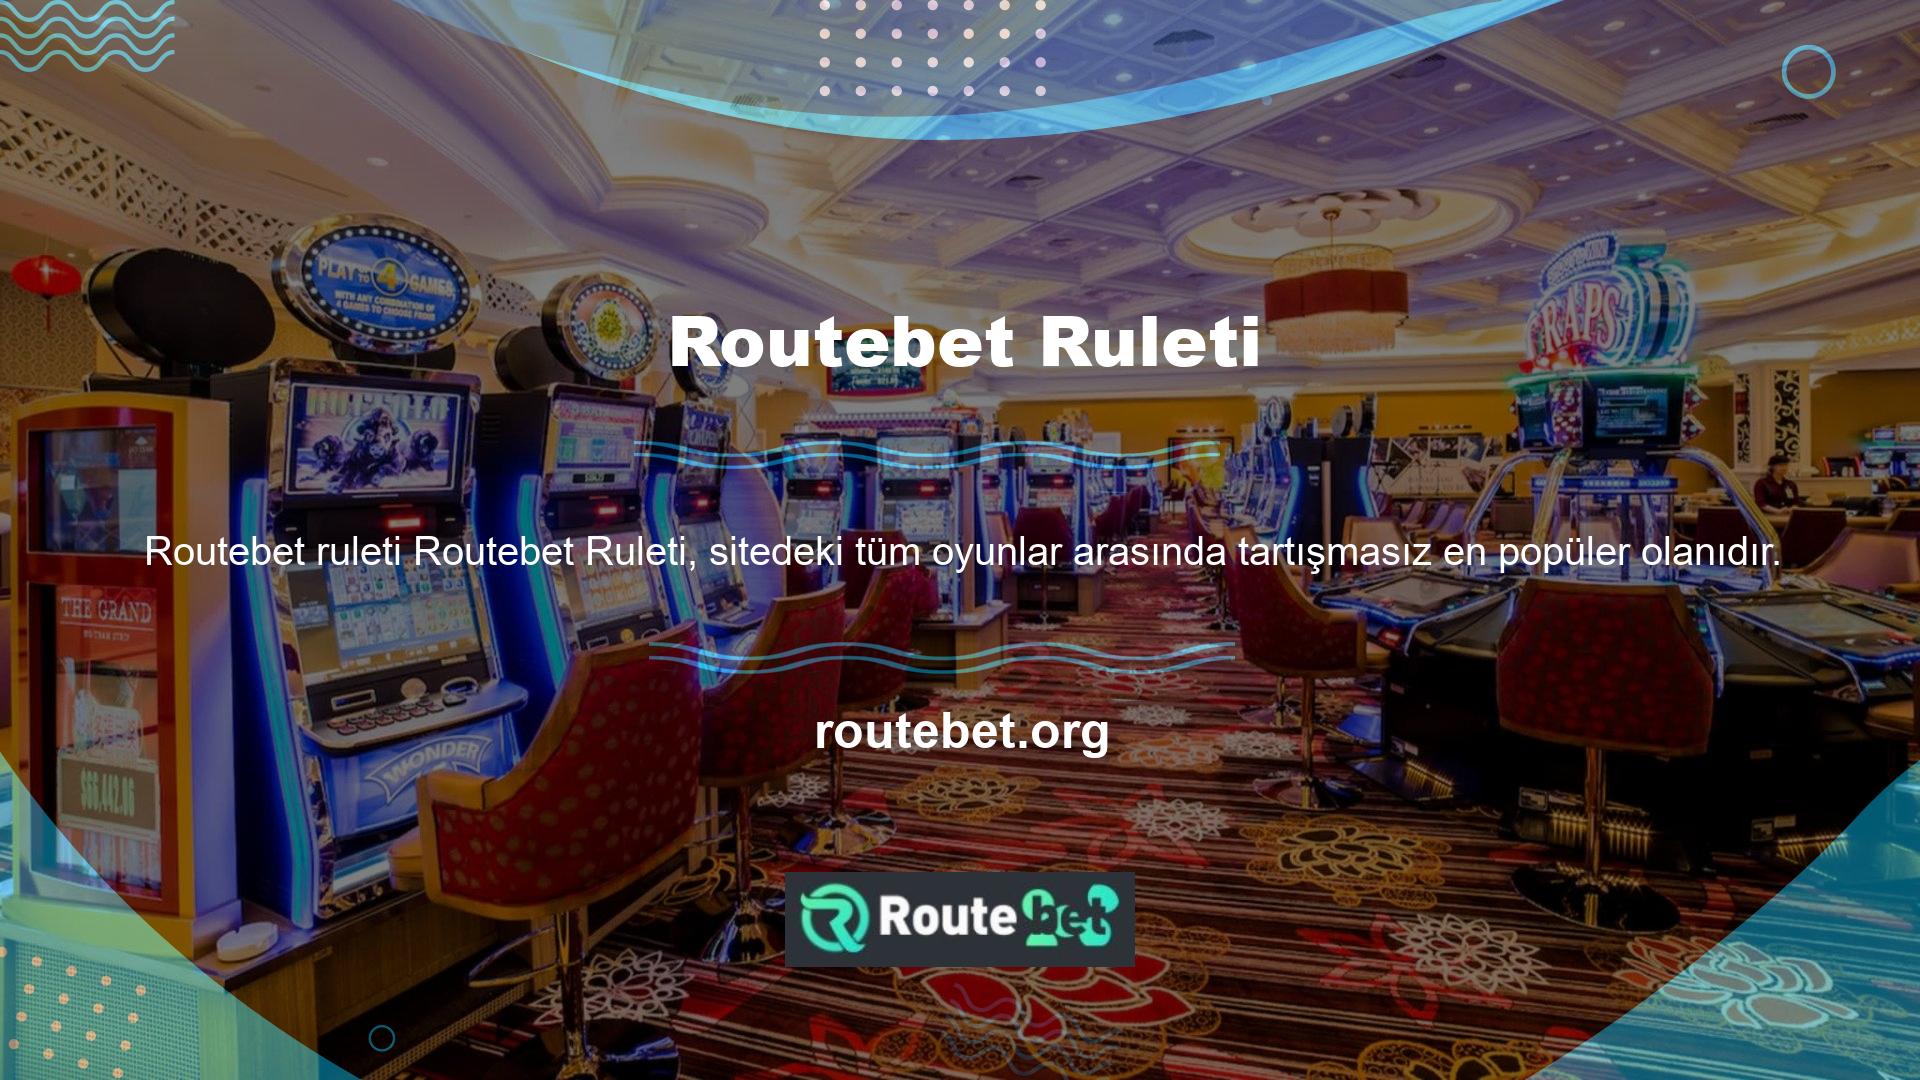 Casino rulet seçenekleri arasında binlerce kişinin aynı anda oynayabileceği birçok rulet oyunu bulunmaktadır